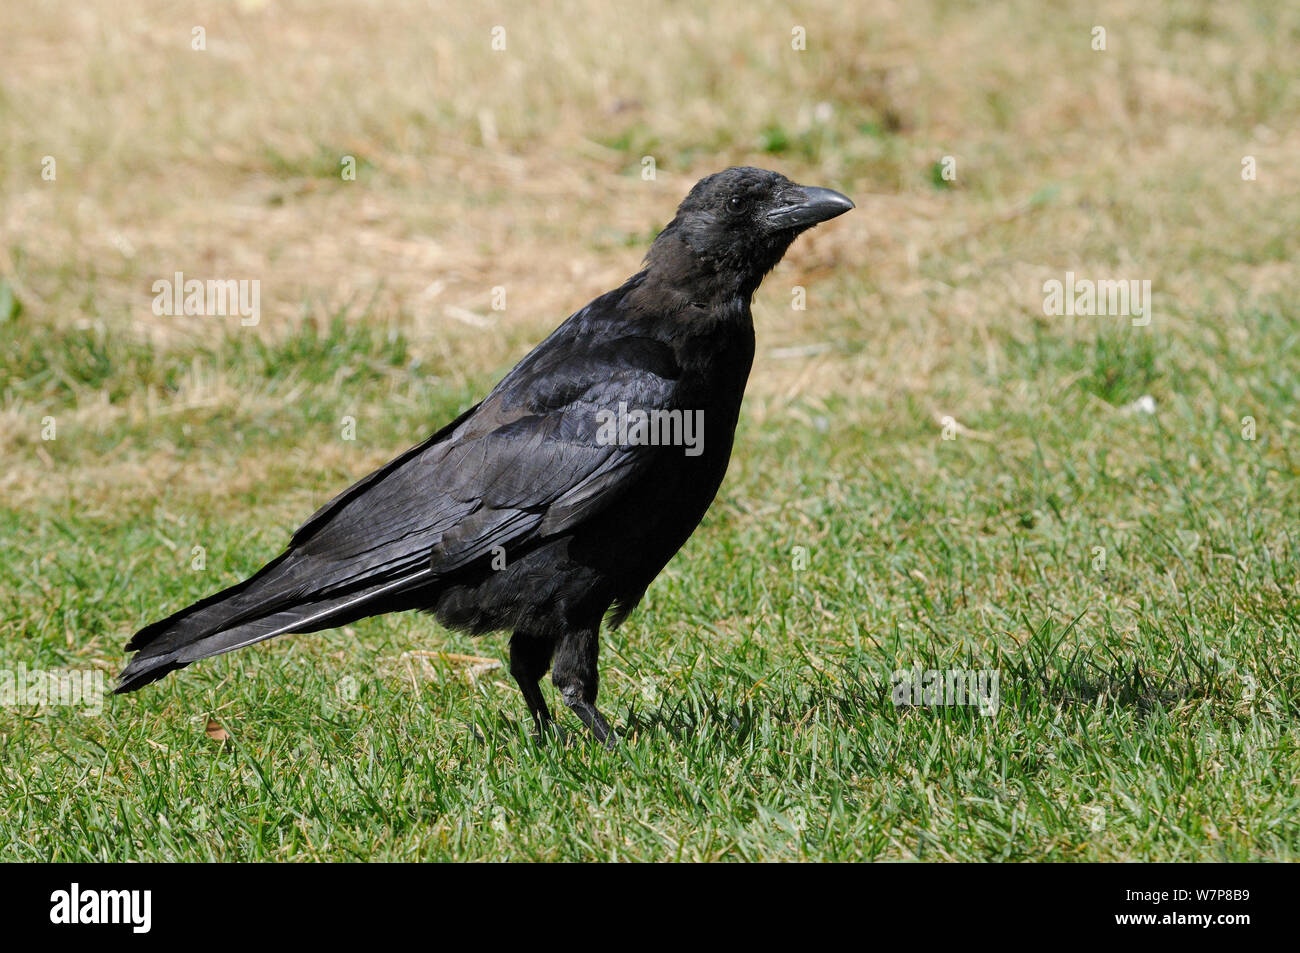 Carrion crow (Corvus corone) jóvenes forrajeando en césped de hierba, St James's Park, Londres, Reino Unido, septiembre. Foto de stock